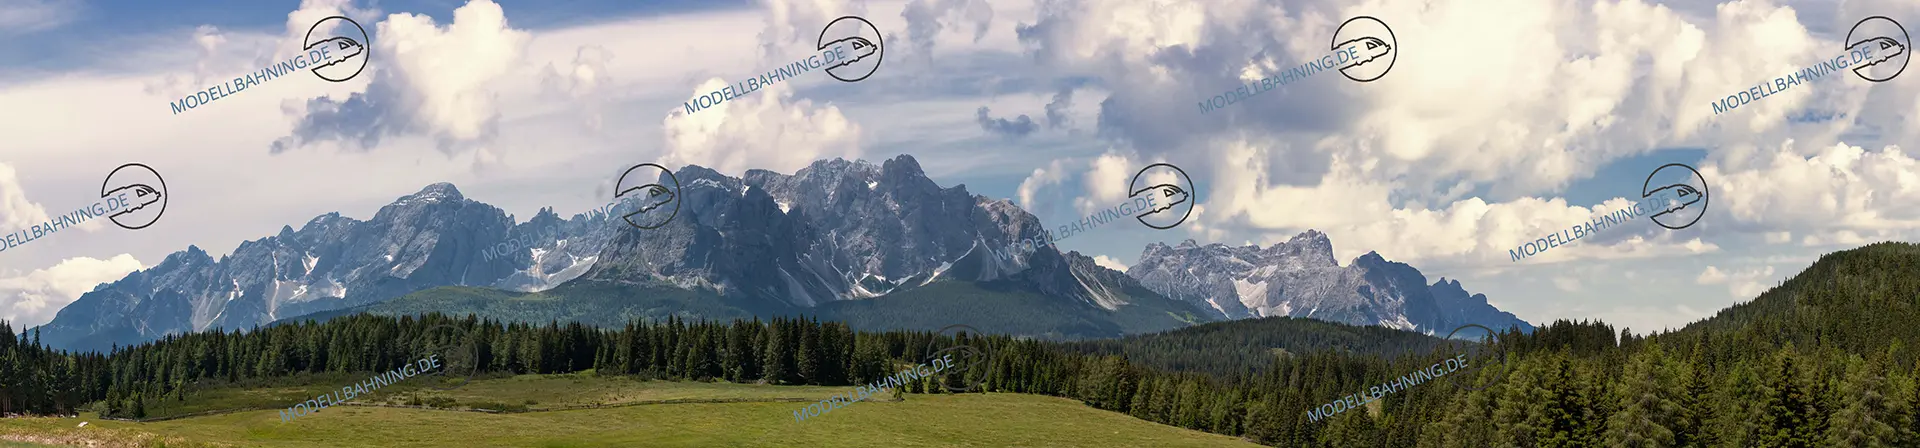 Alpenland-Teil3-Karnischer-Hauptkamm-Osttirol-modellbahnhintergrund 3